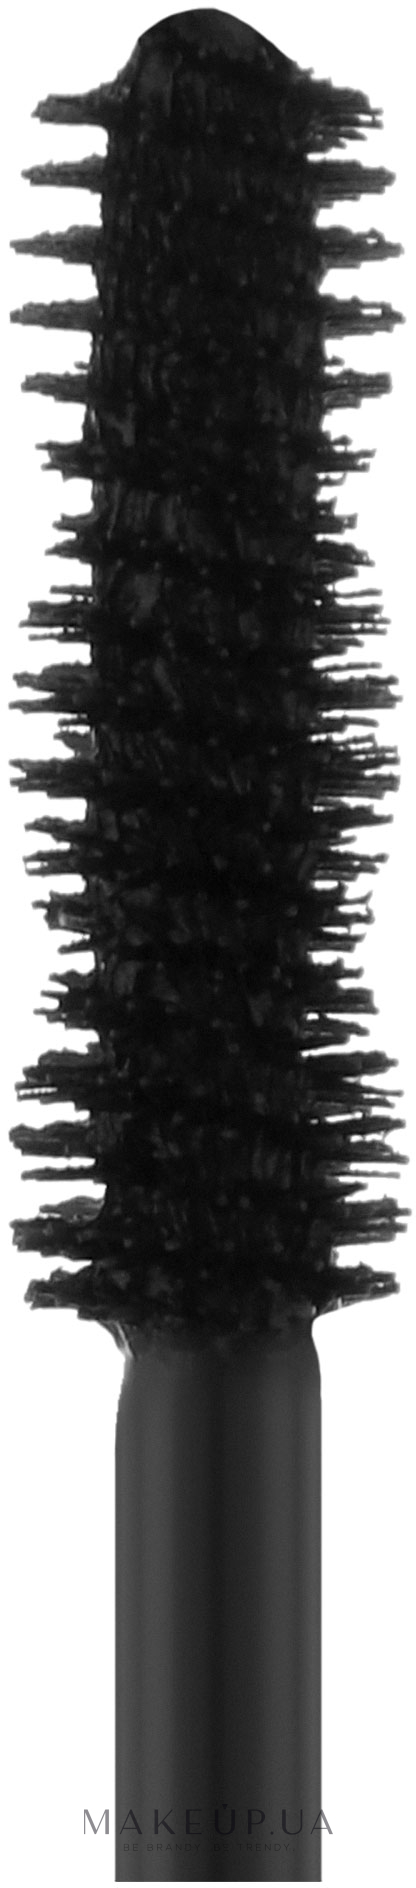 Тушь для ресниц - Diego Dalla Palma Mascara  — фото 111 - Black